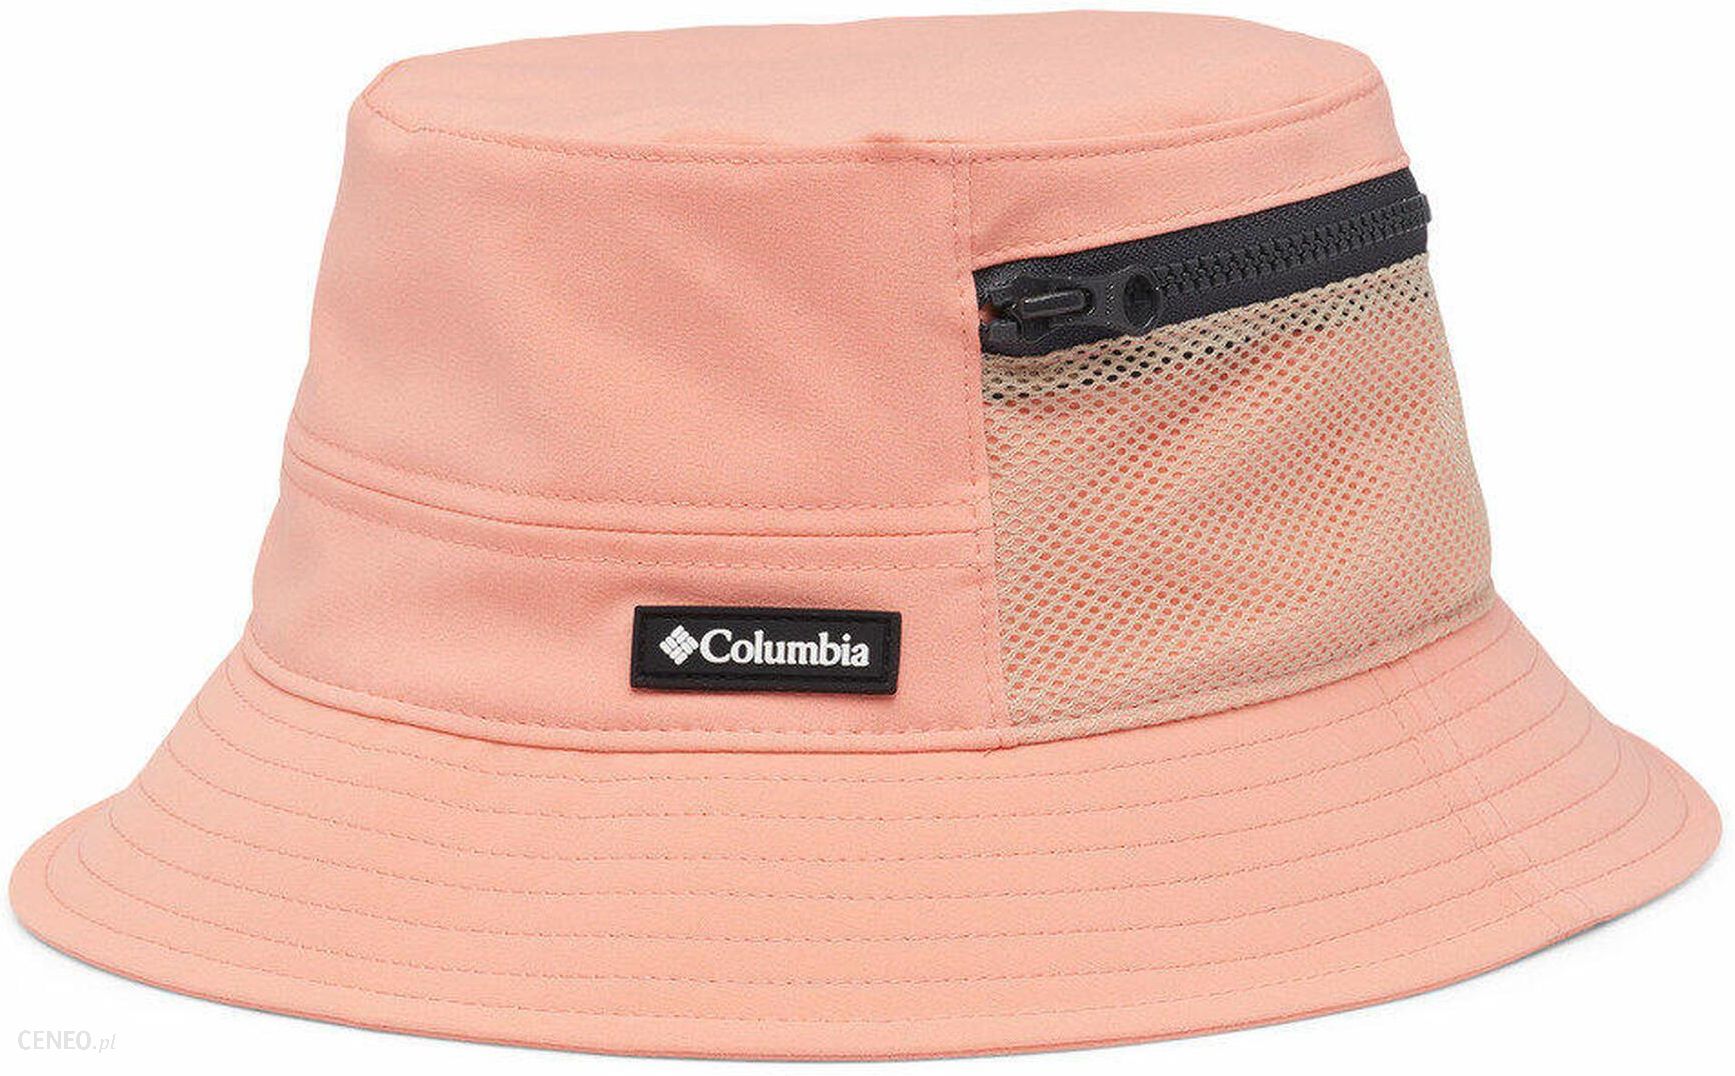 Columbia Unisex-Child Pixel Grabber Bucket Hat